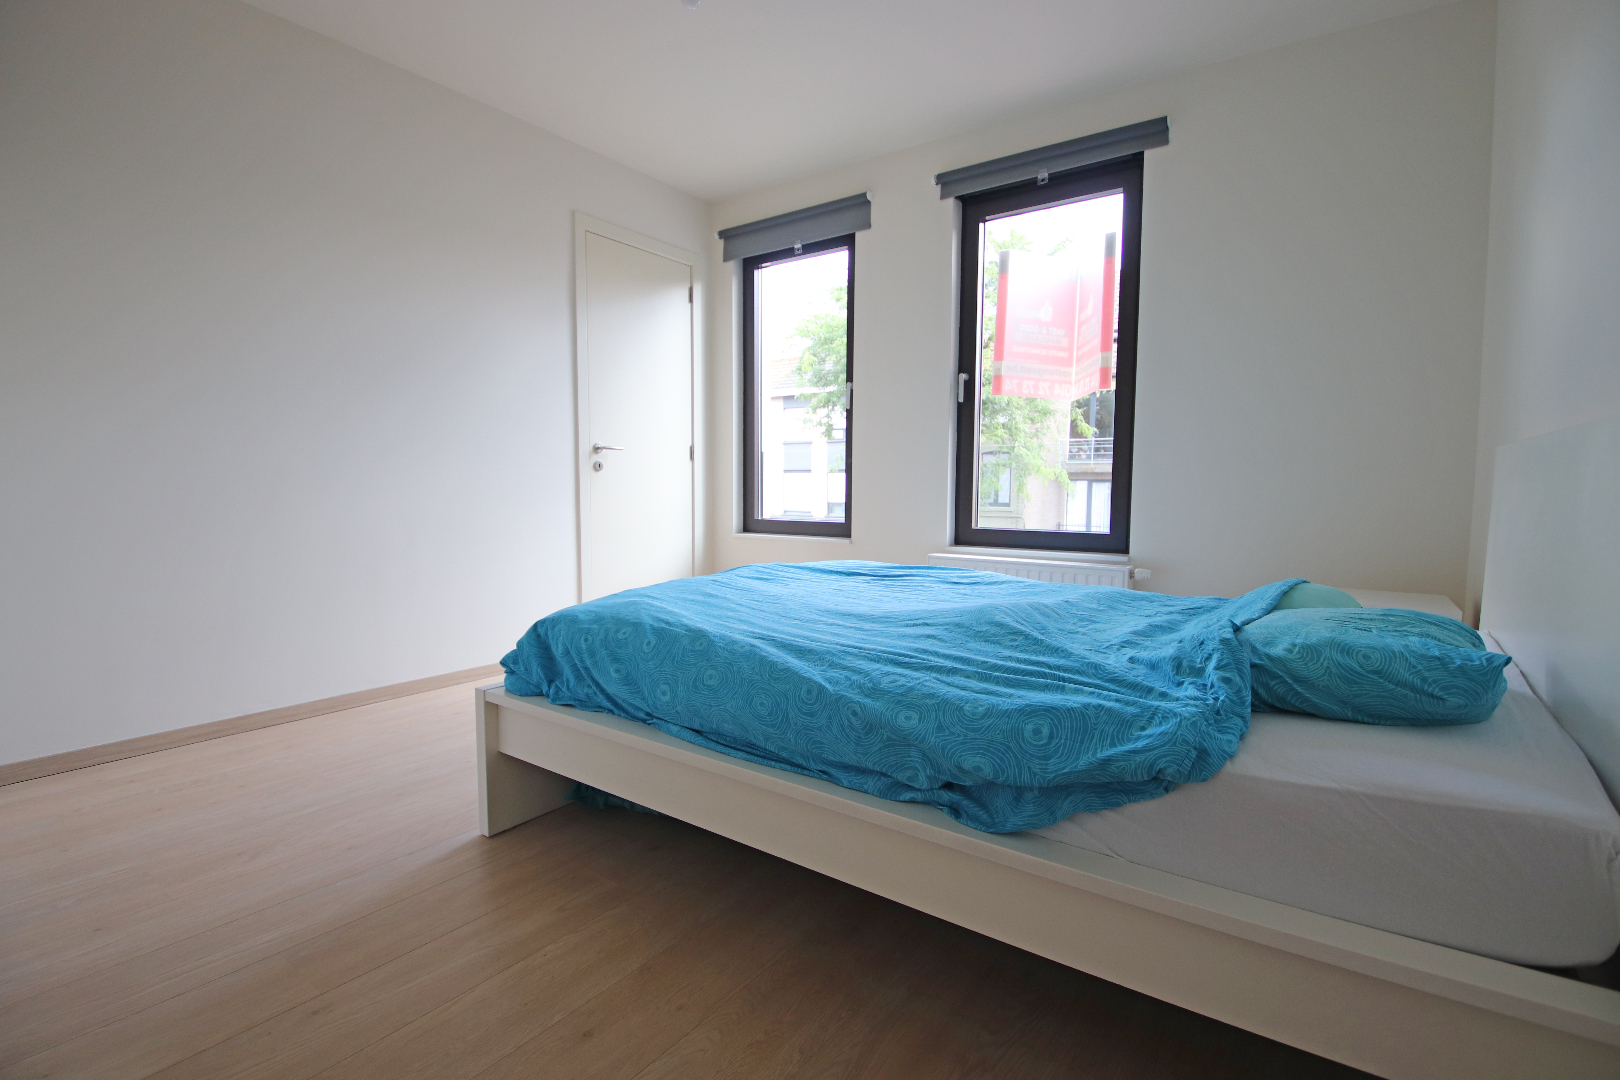 Instapklaar appartement gelegen in het centrum van Leopoldsburg (bj 2015) 